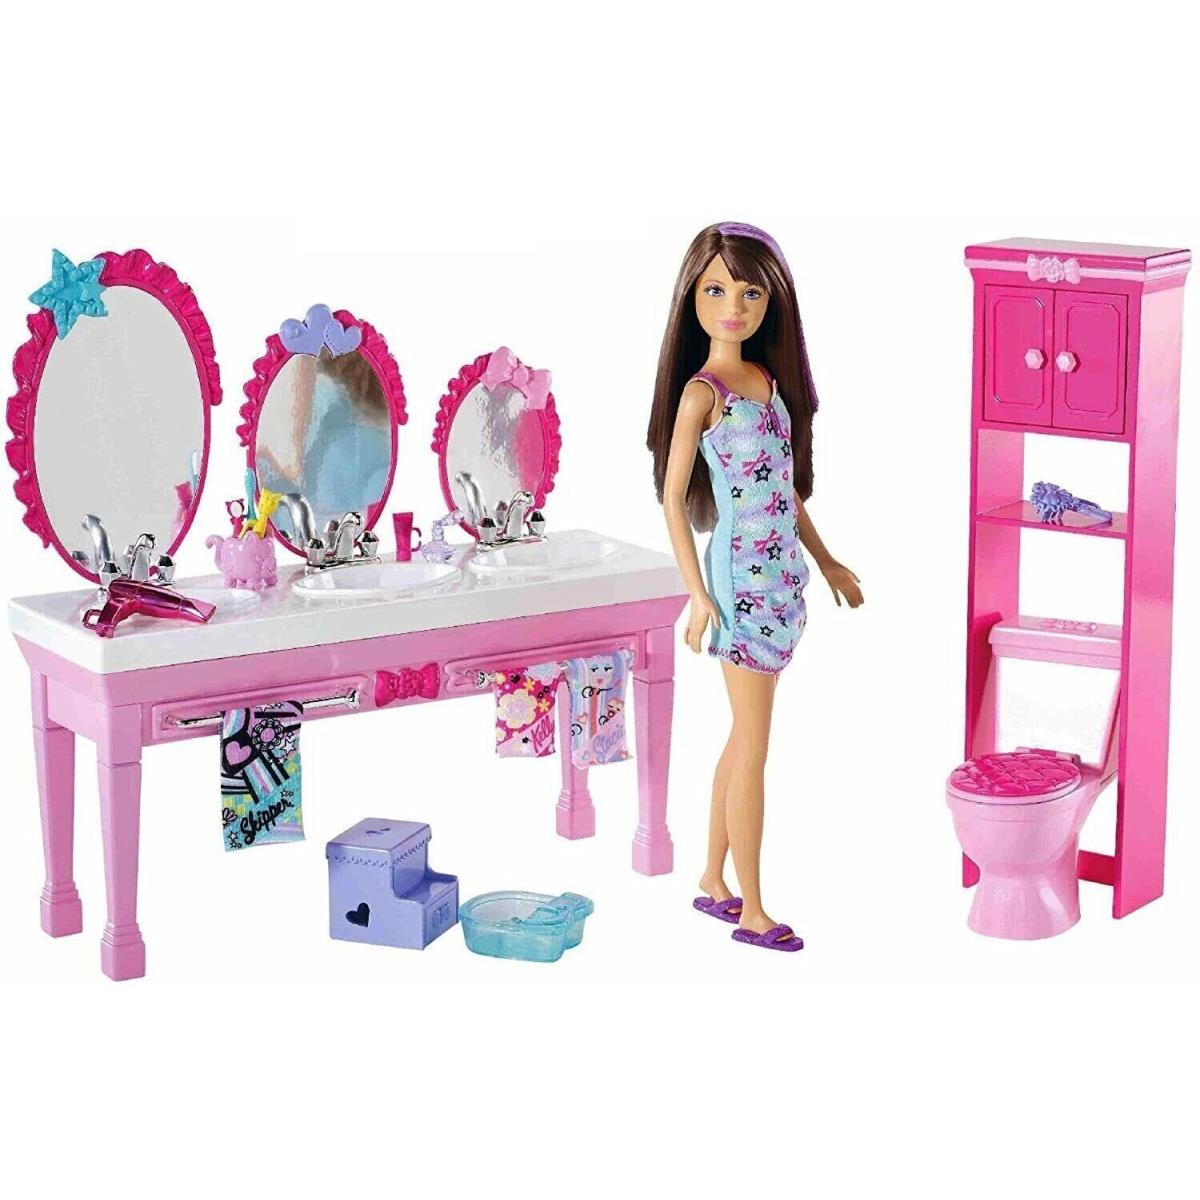 2010 Barbie Sisters` Beauty Fun/bathroom For 3/Sinks/Brunette Skipper/new/mint